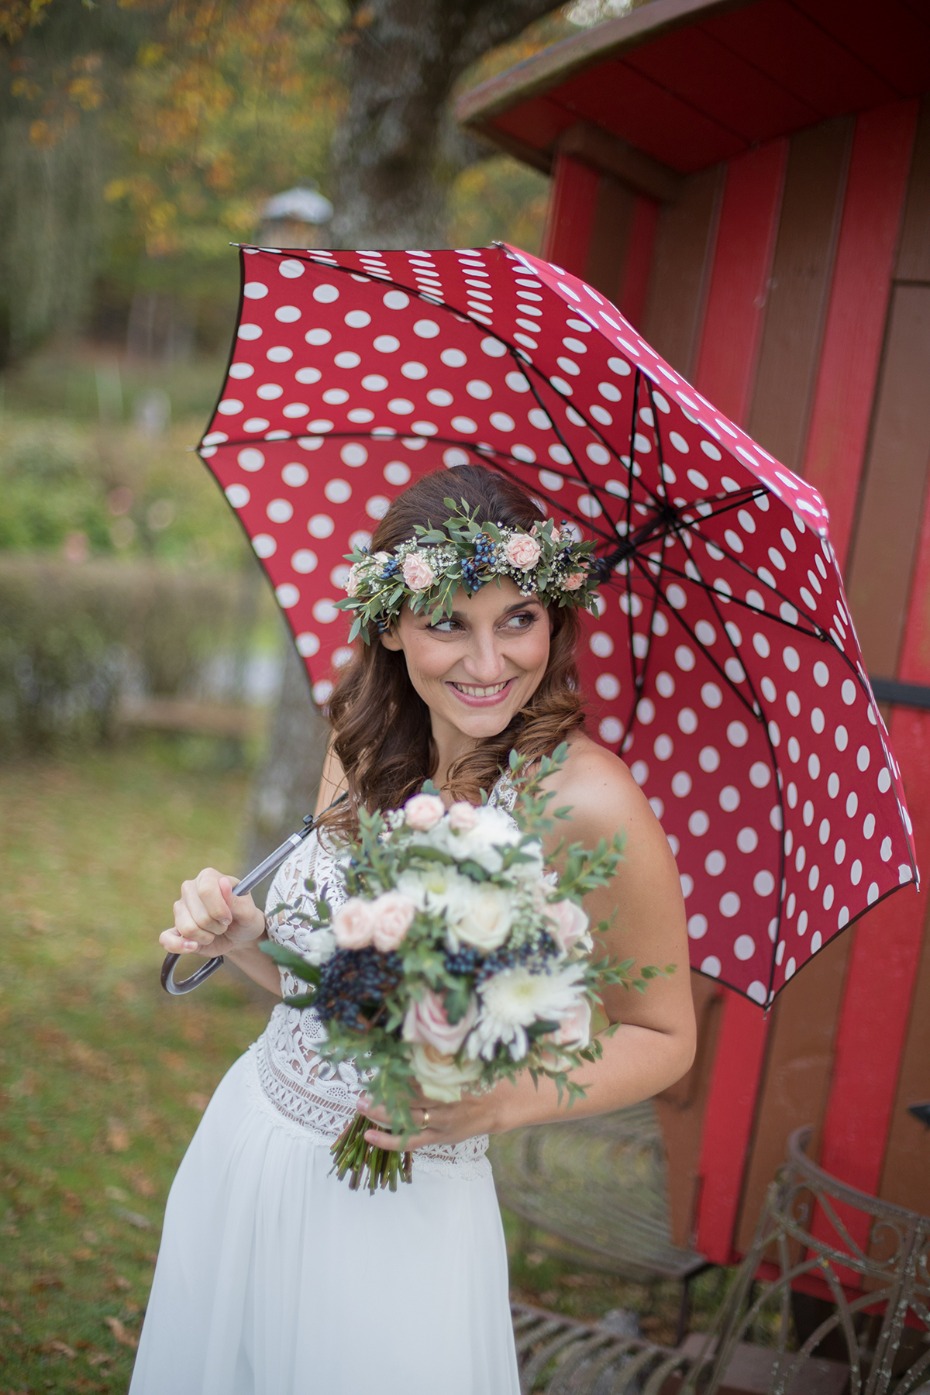 rainy day wedding photo idea